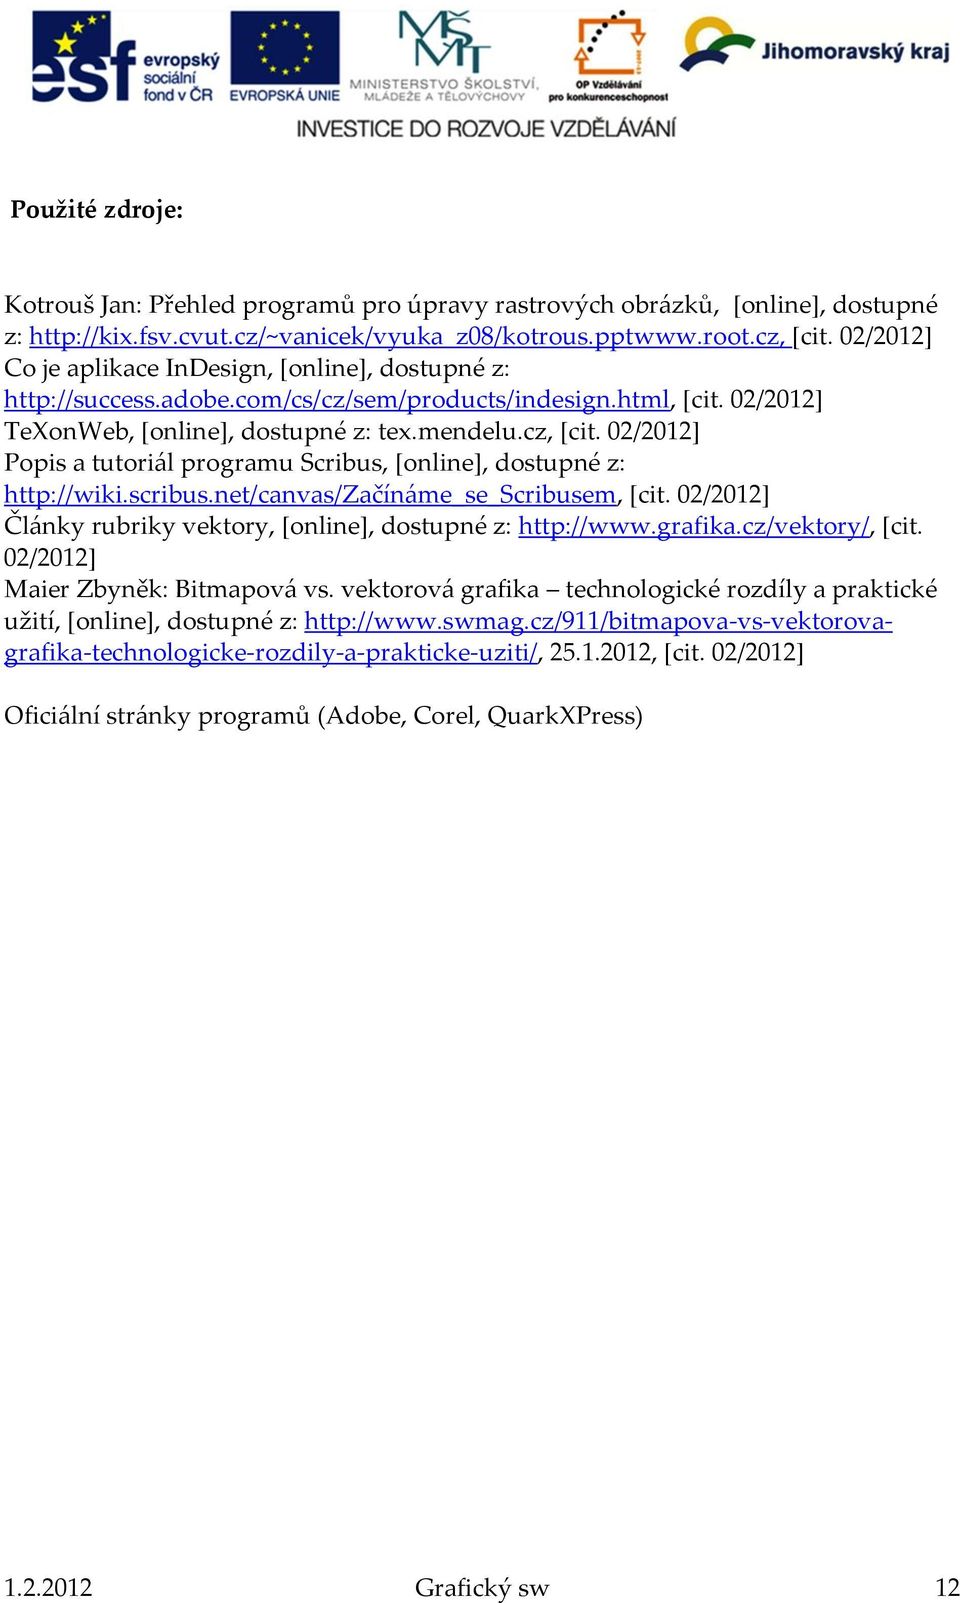 02/2012] Popis a tutoriál programu Scribus, [online], dostupné z: http://wiki.scribus.net/canvas/začínáme_se_scribusem, [cit. 02/2012] Články rubriky vektory, [online], dostupné z: http://www.grafika.